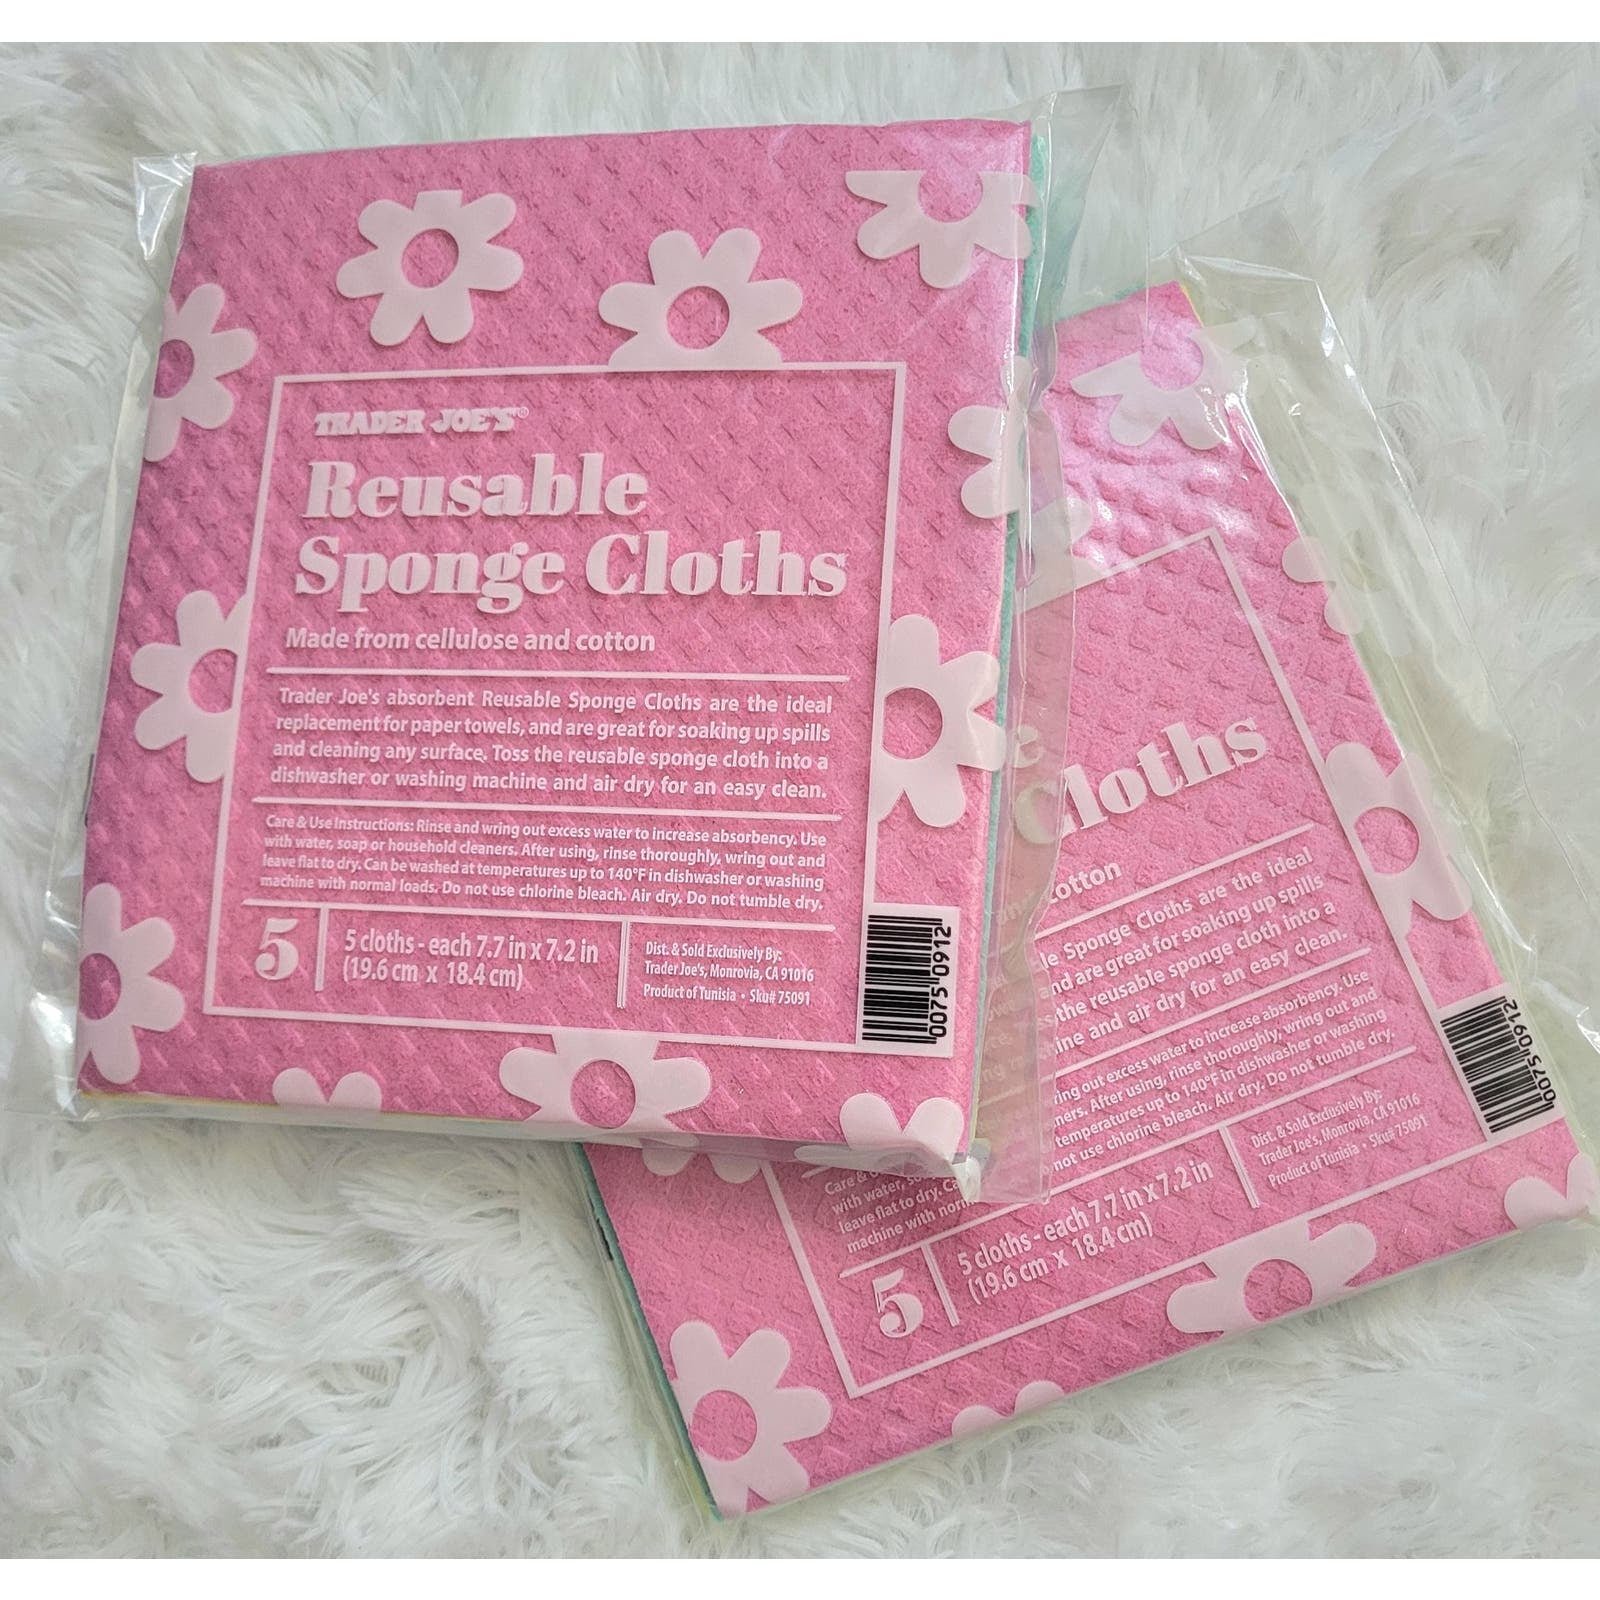 Trader Joe´s Reusable Sponge Cloths

2 packs New S